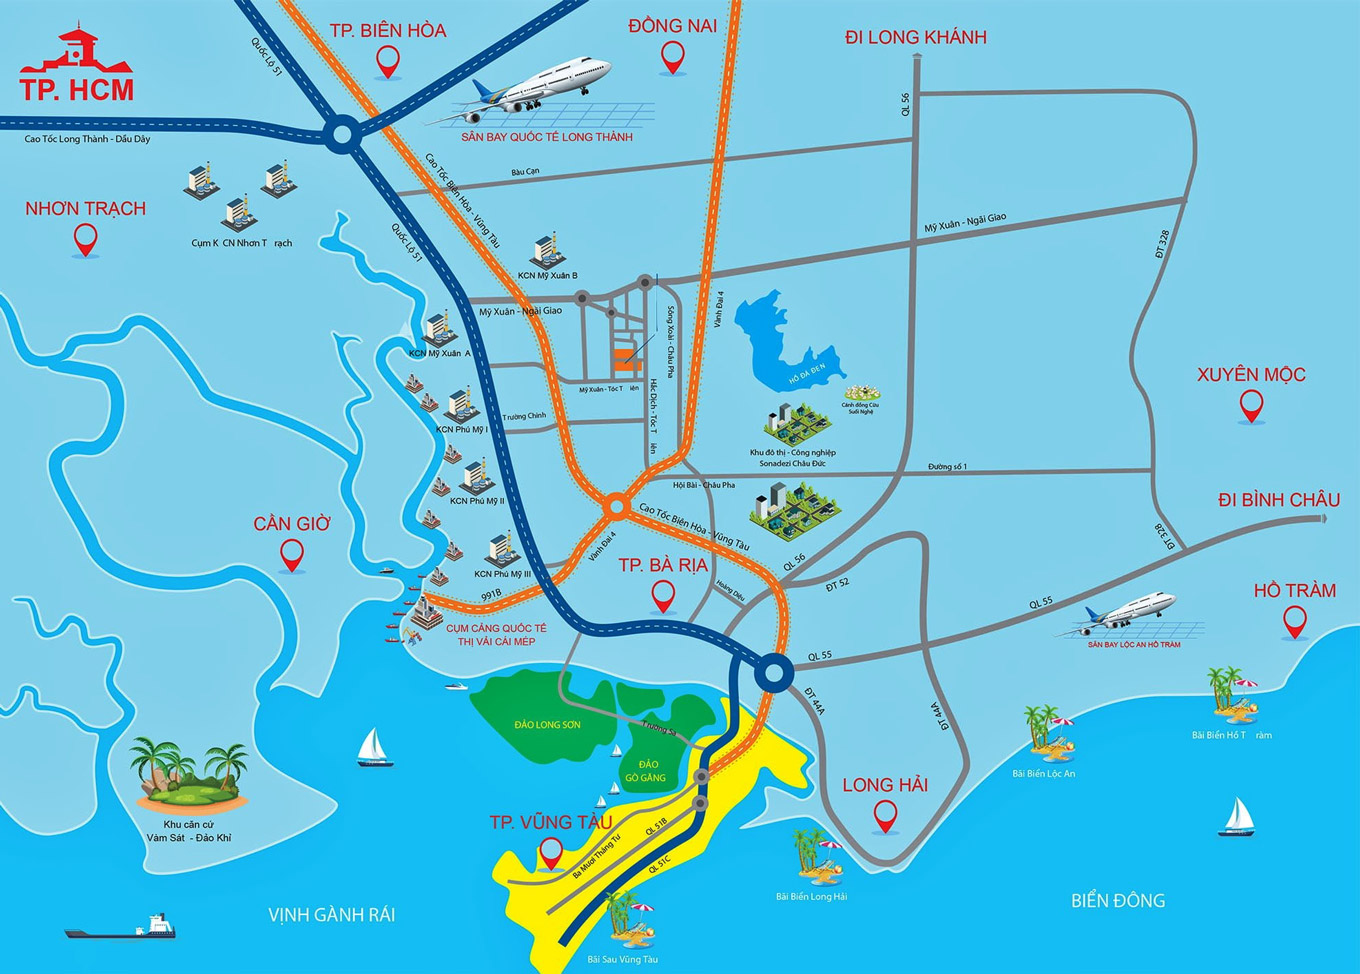 Quy hoạch tuyến cao tốc Biên Hòa - Vũng Tàu và vành đai 4